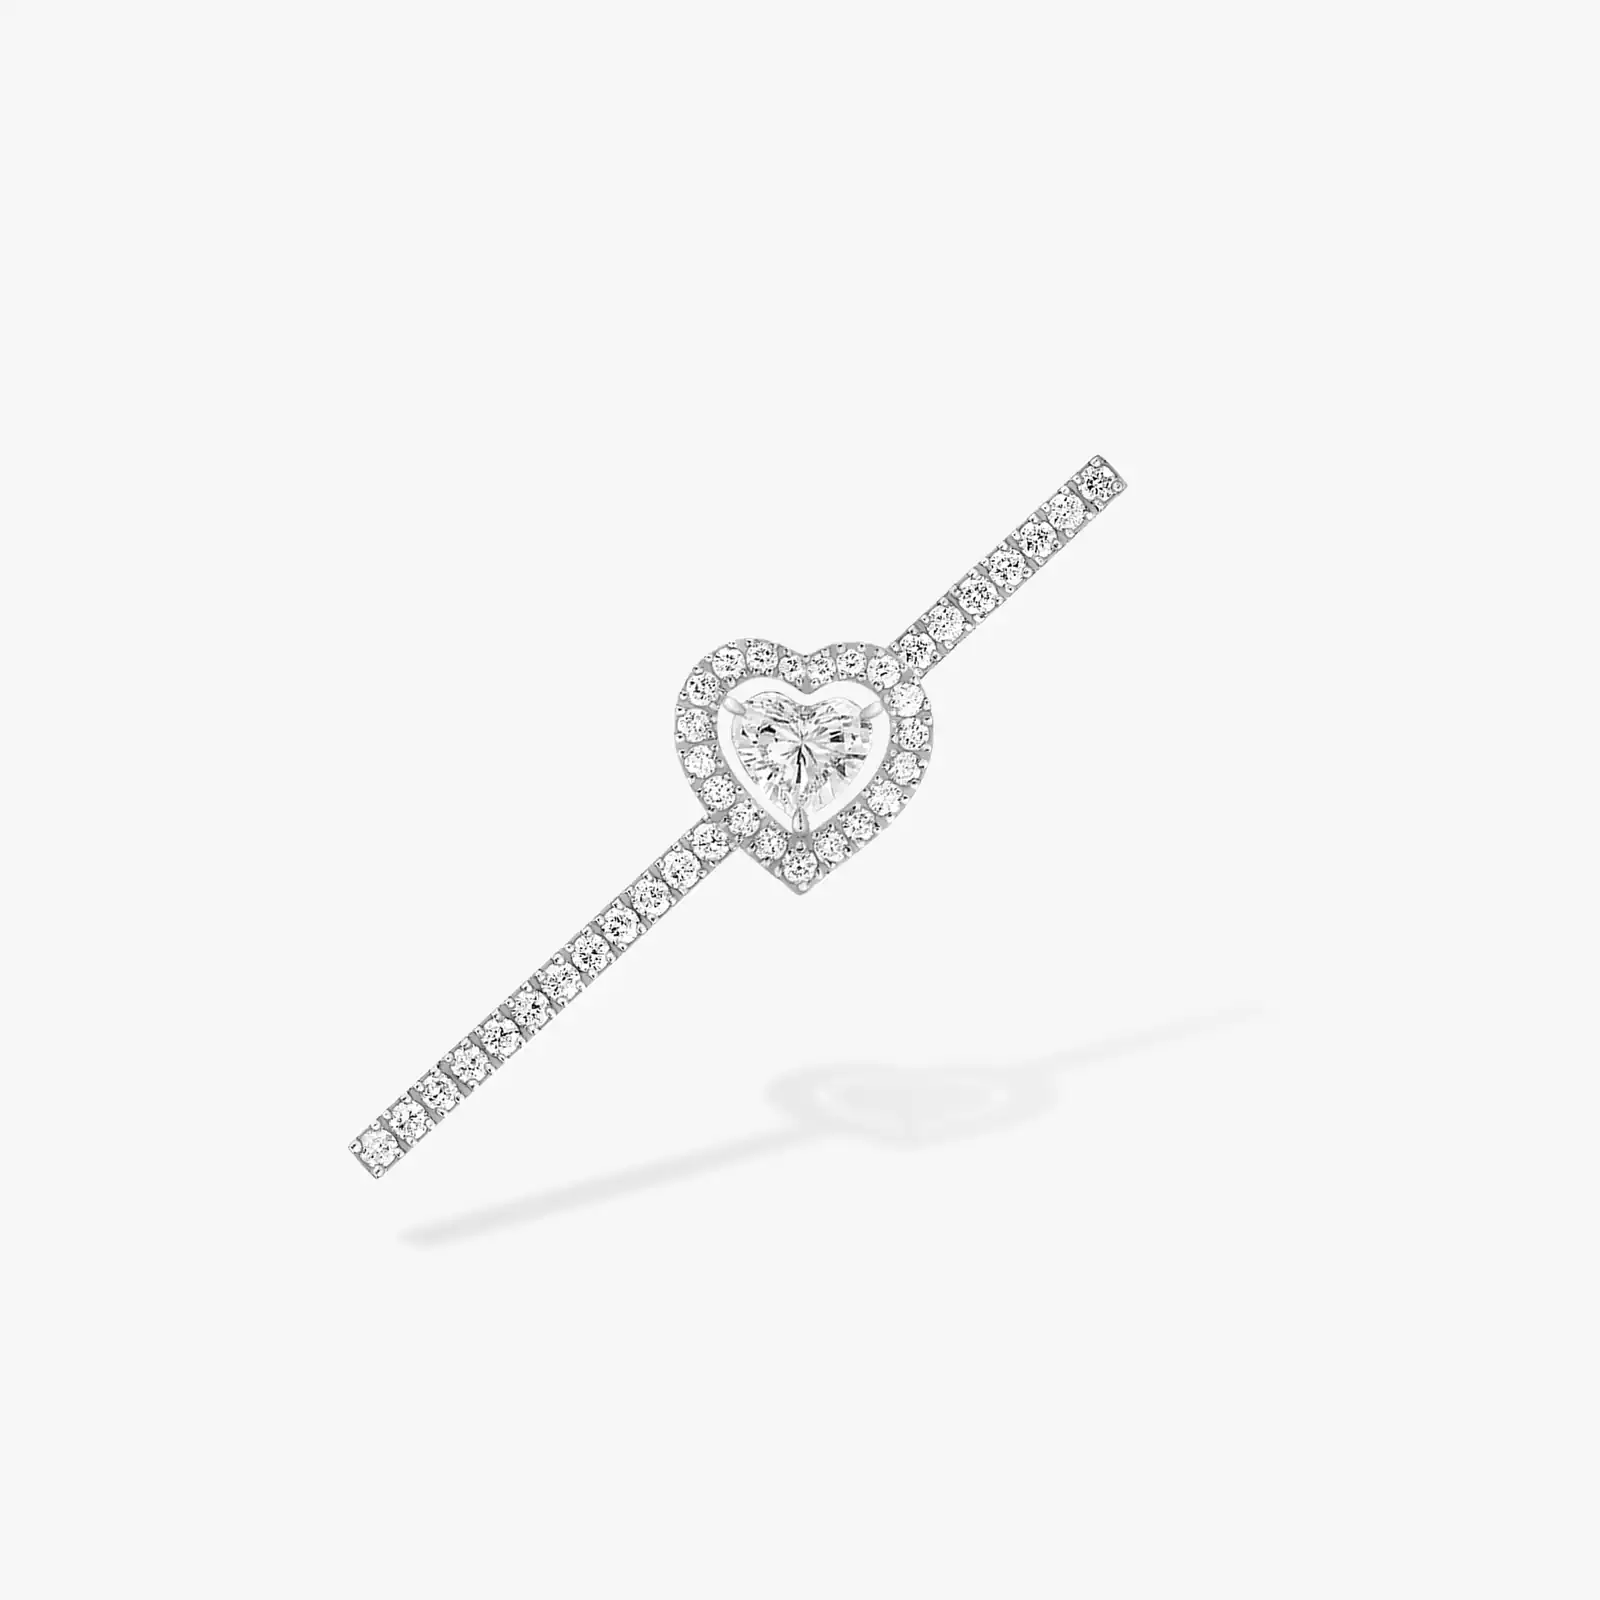 Boucles d'oreilles Femme Or Blanc Diamant Mono Boucle d'Oreille Joy diamant cœur pavée 0,15ct 11433-WG